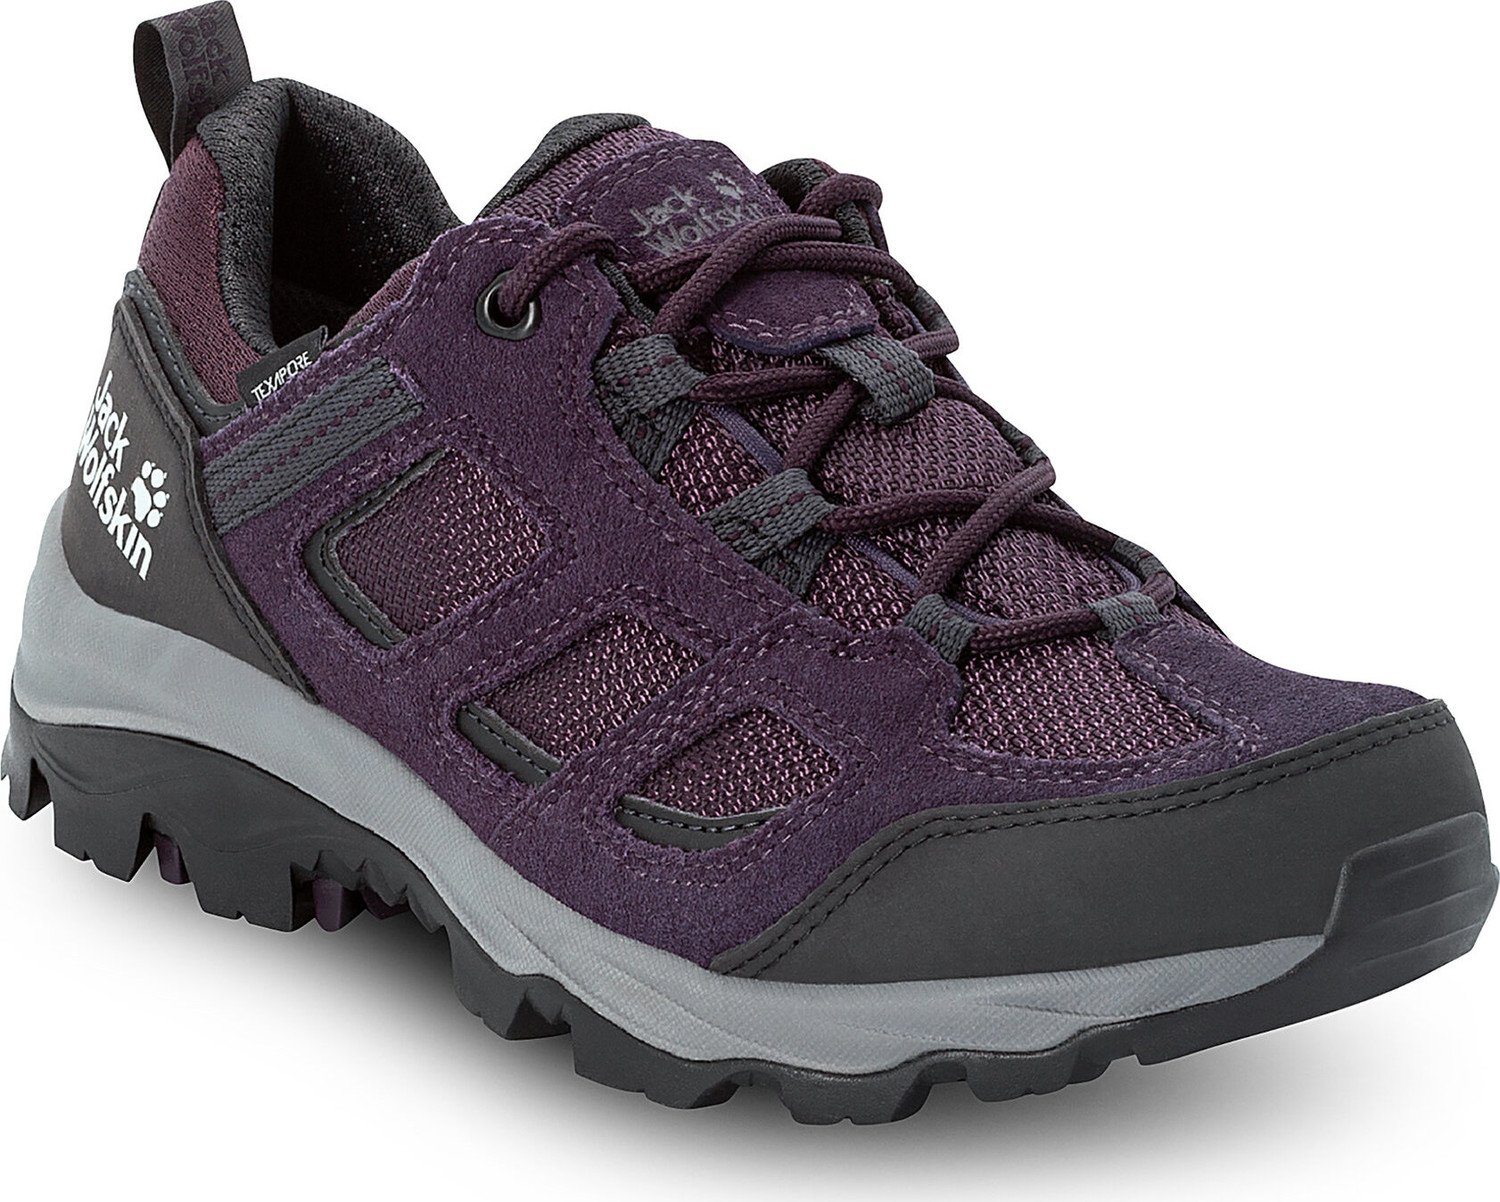 Trekingová obuv Jack Wolfskin Vojo 3 Texapore Low W 4042451 Purple/ Grey